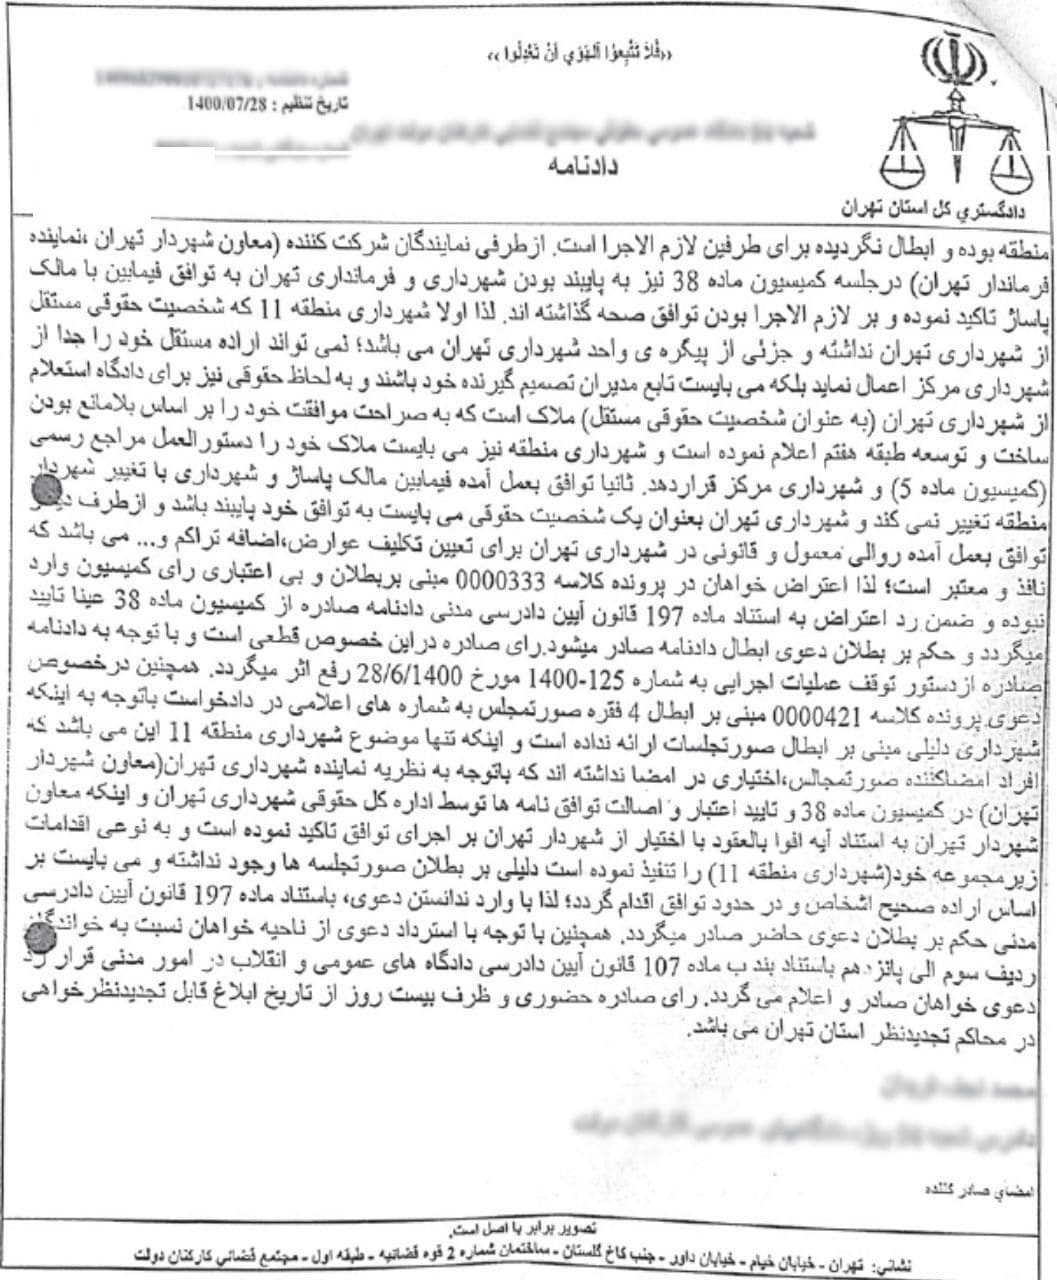 دوئل علاءالدین و شهرداری تهران/ اجازه ۲ طبقه اضافه بنا به علاءالدین با حکم دادگاه!